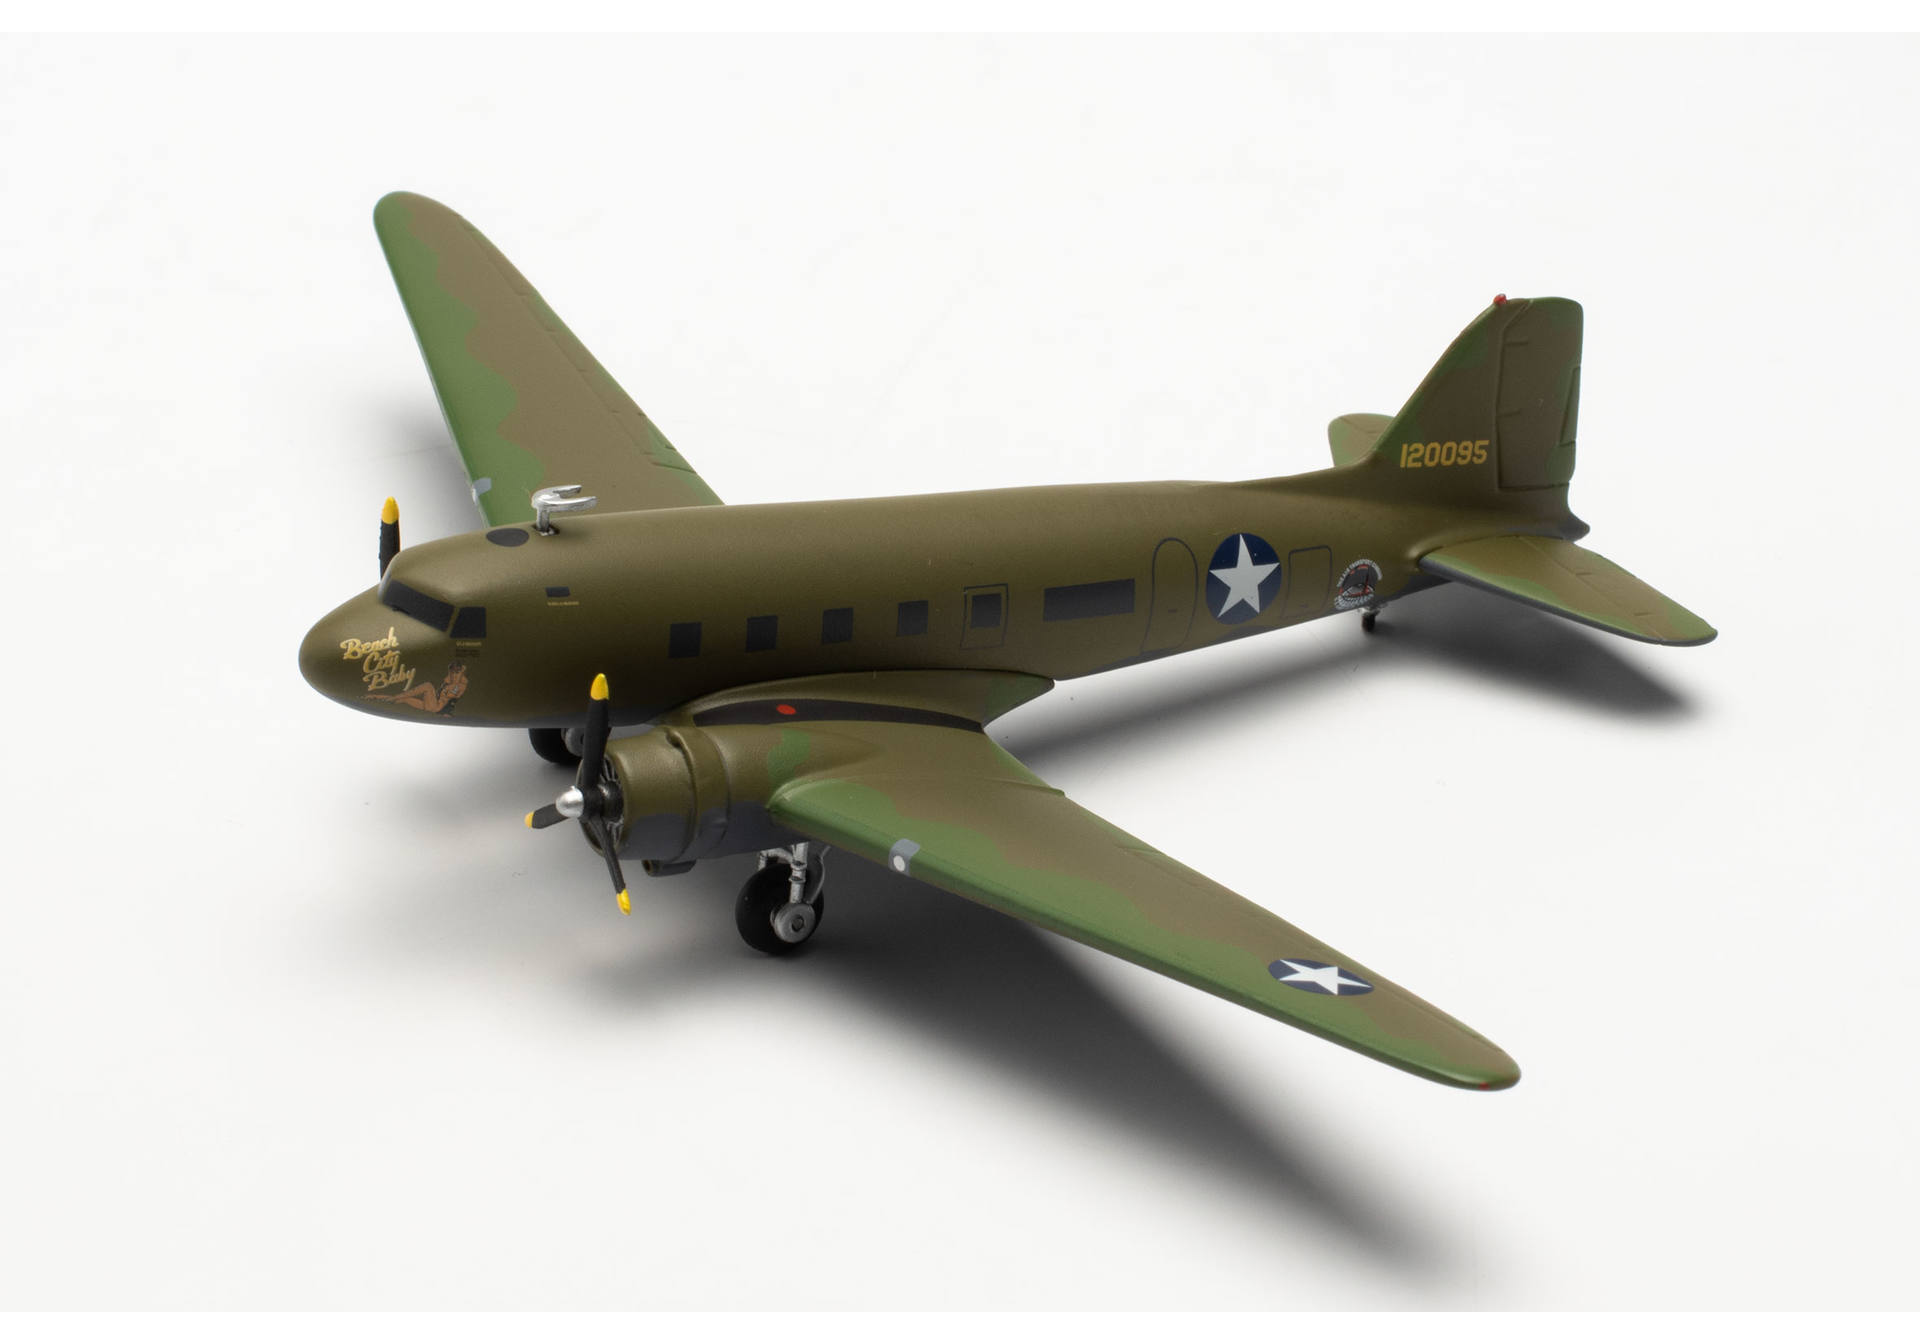 USAAF / Vintage Wings Douglas C-53 Skytrooper “Beach City Baby” – 41-20095